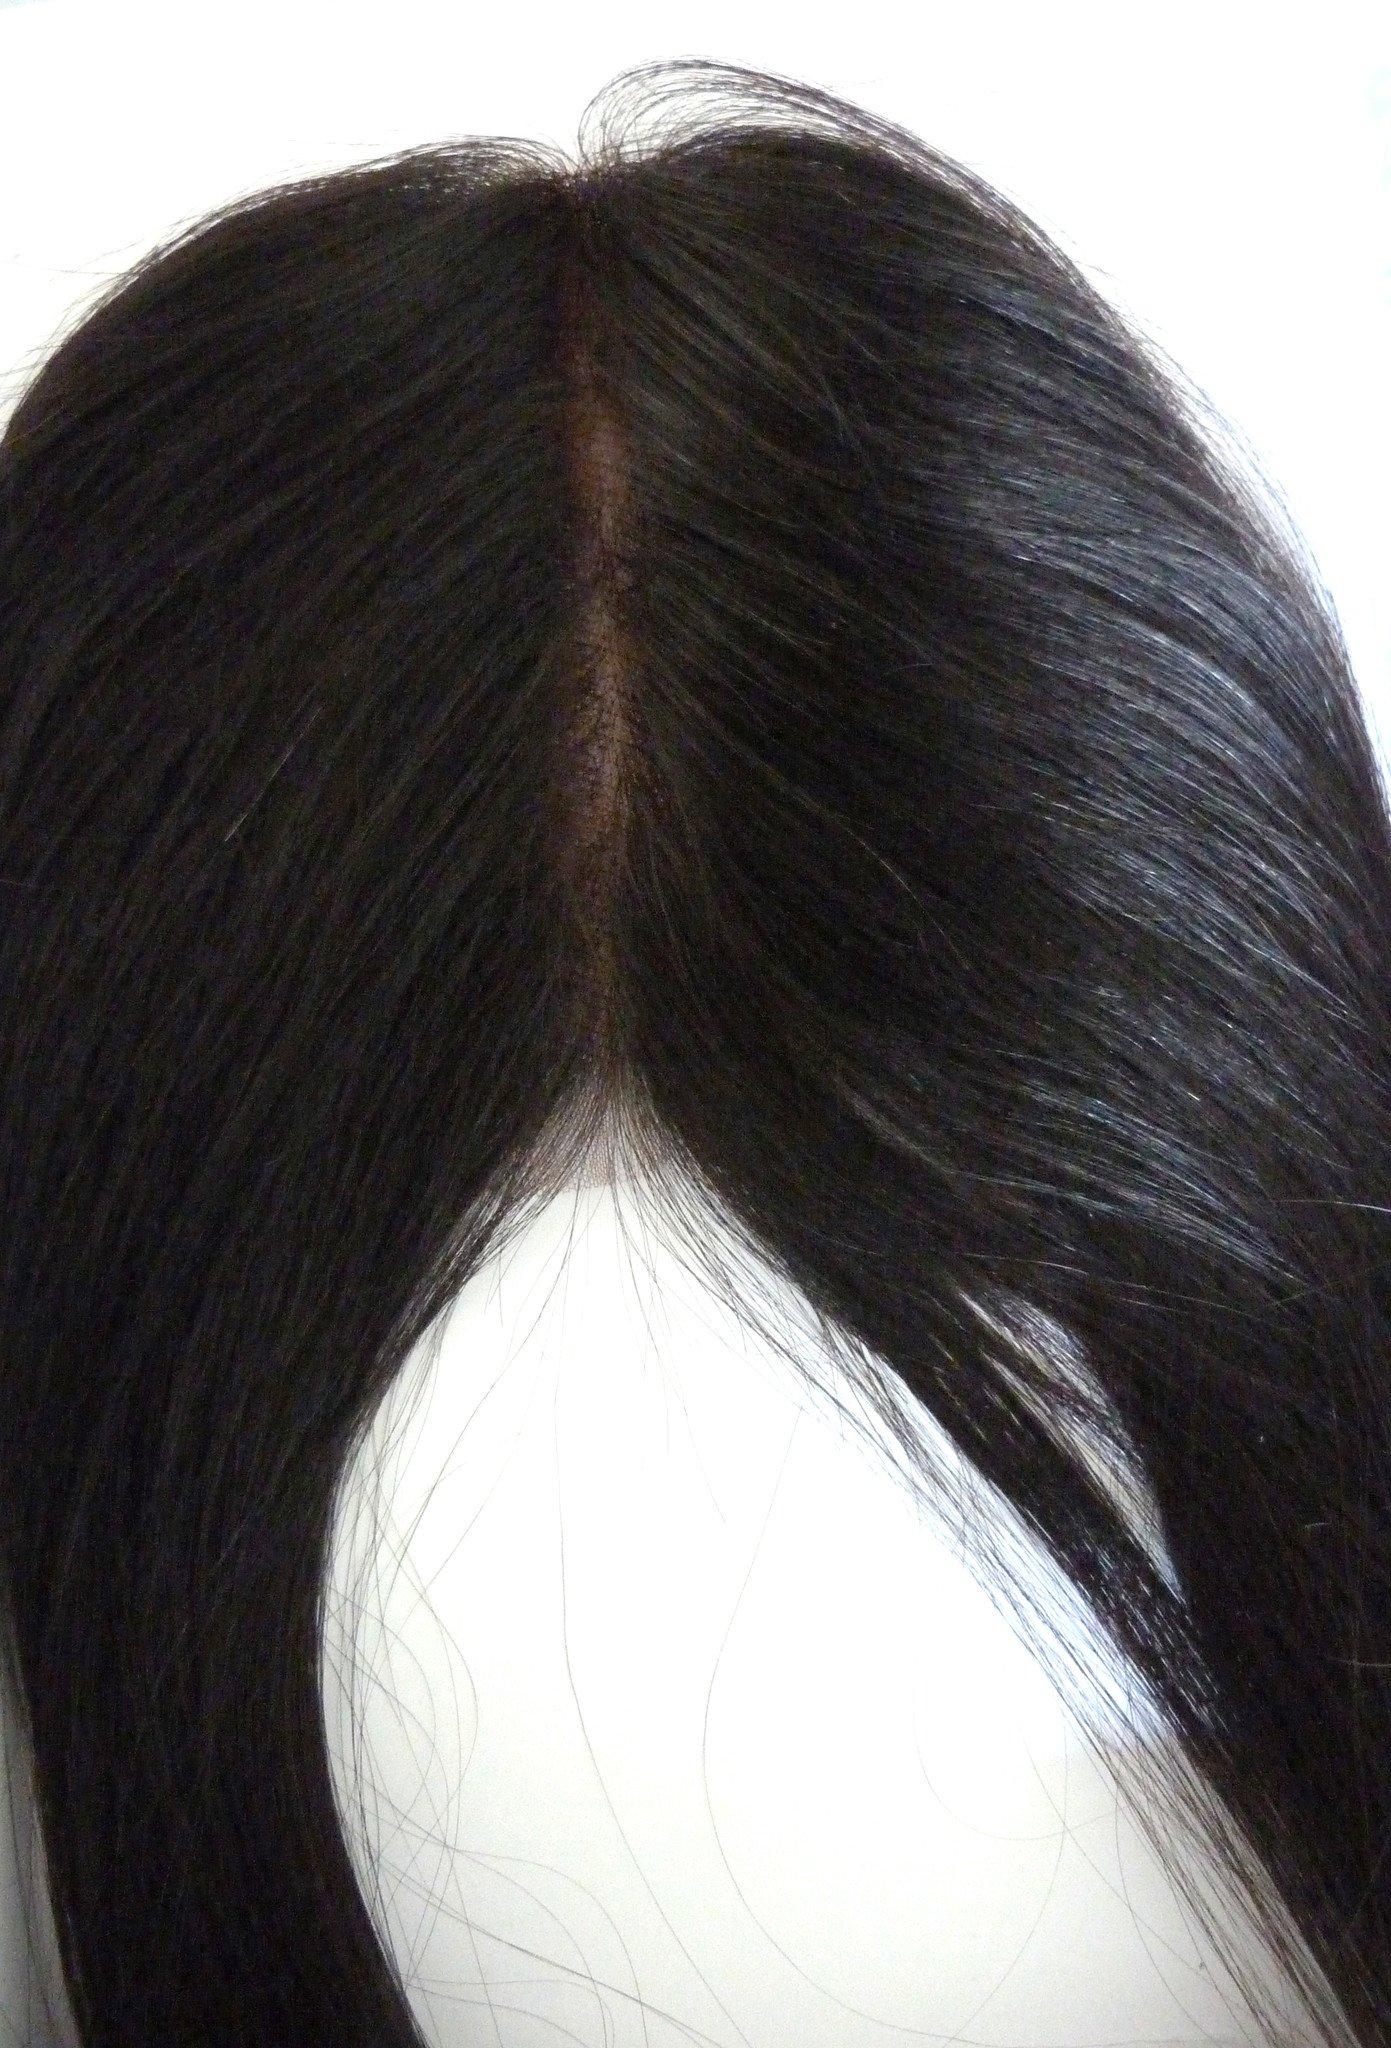 إغلاق علوي من الدانتيل الهندي البكر ريمي - 4x4 بوصة - شعر وجمال عذراء، أفضل وصلات الشعر، شعر بشري بكر حقيقي.